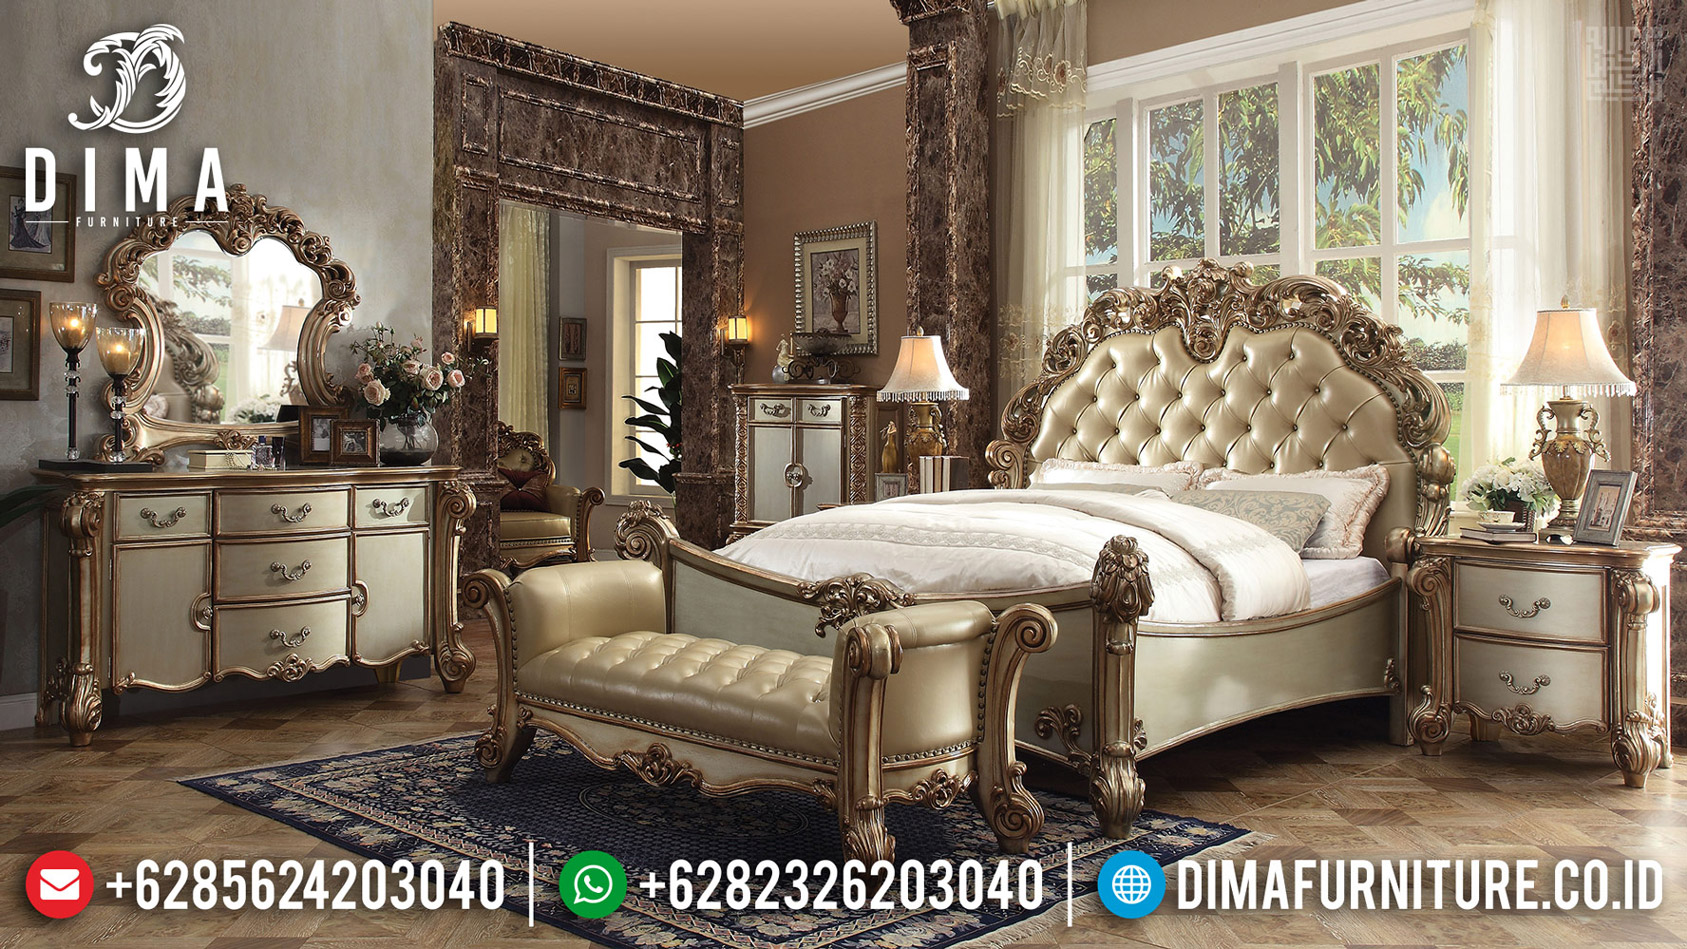 Jual Tempat Tidur Mewah Luxury Carving Jepara Italian Baroque New Design MMJ-0554